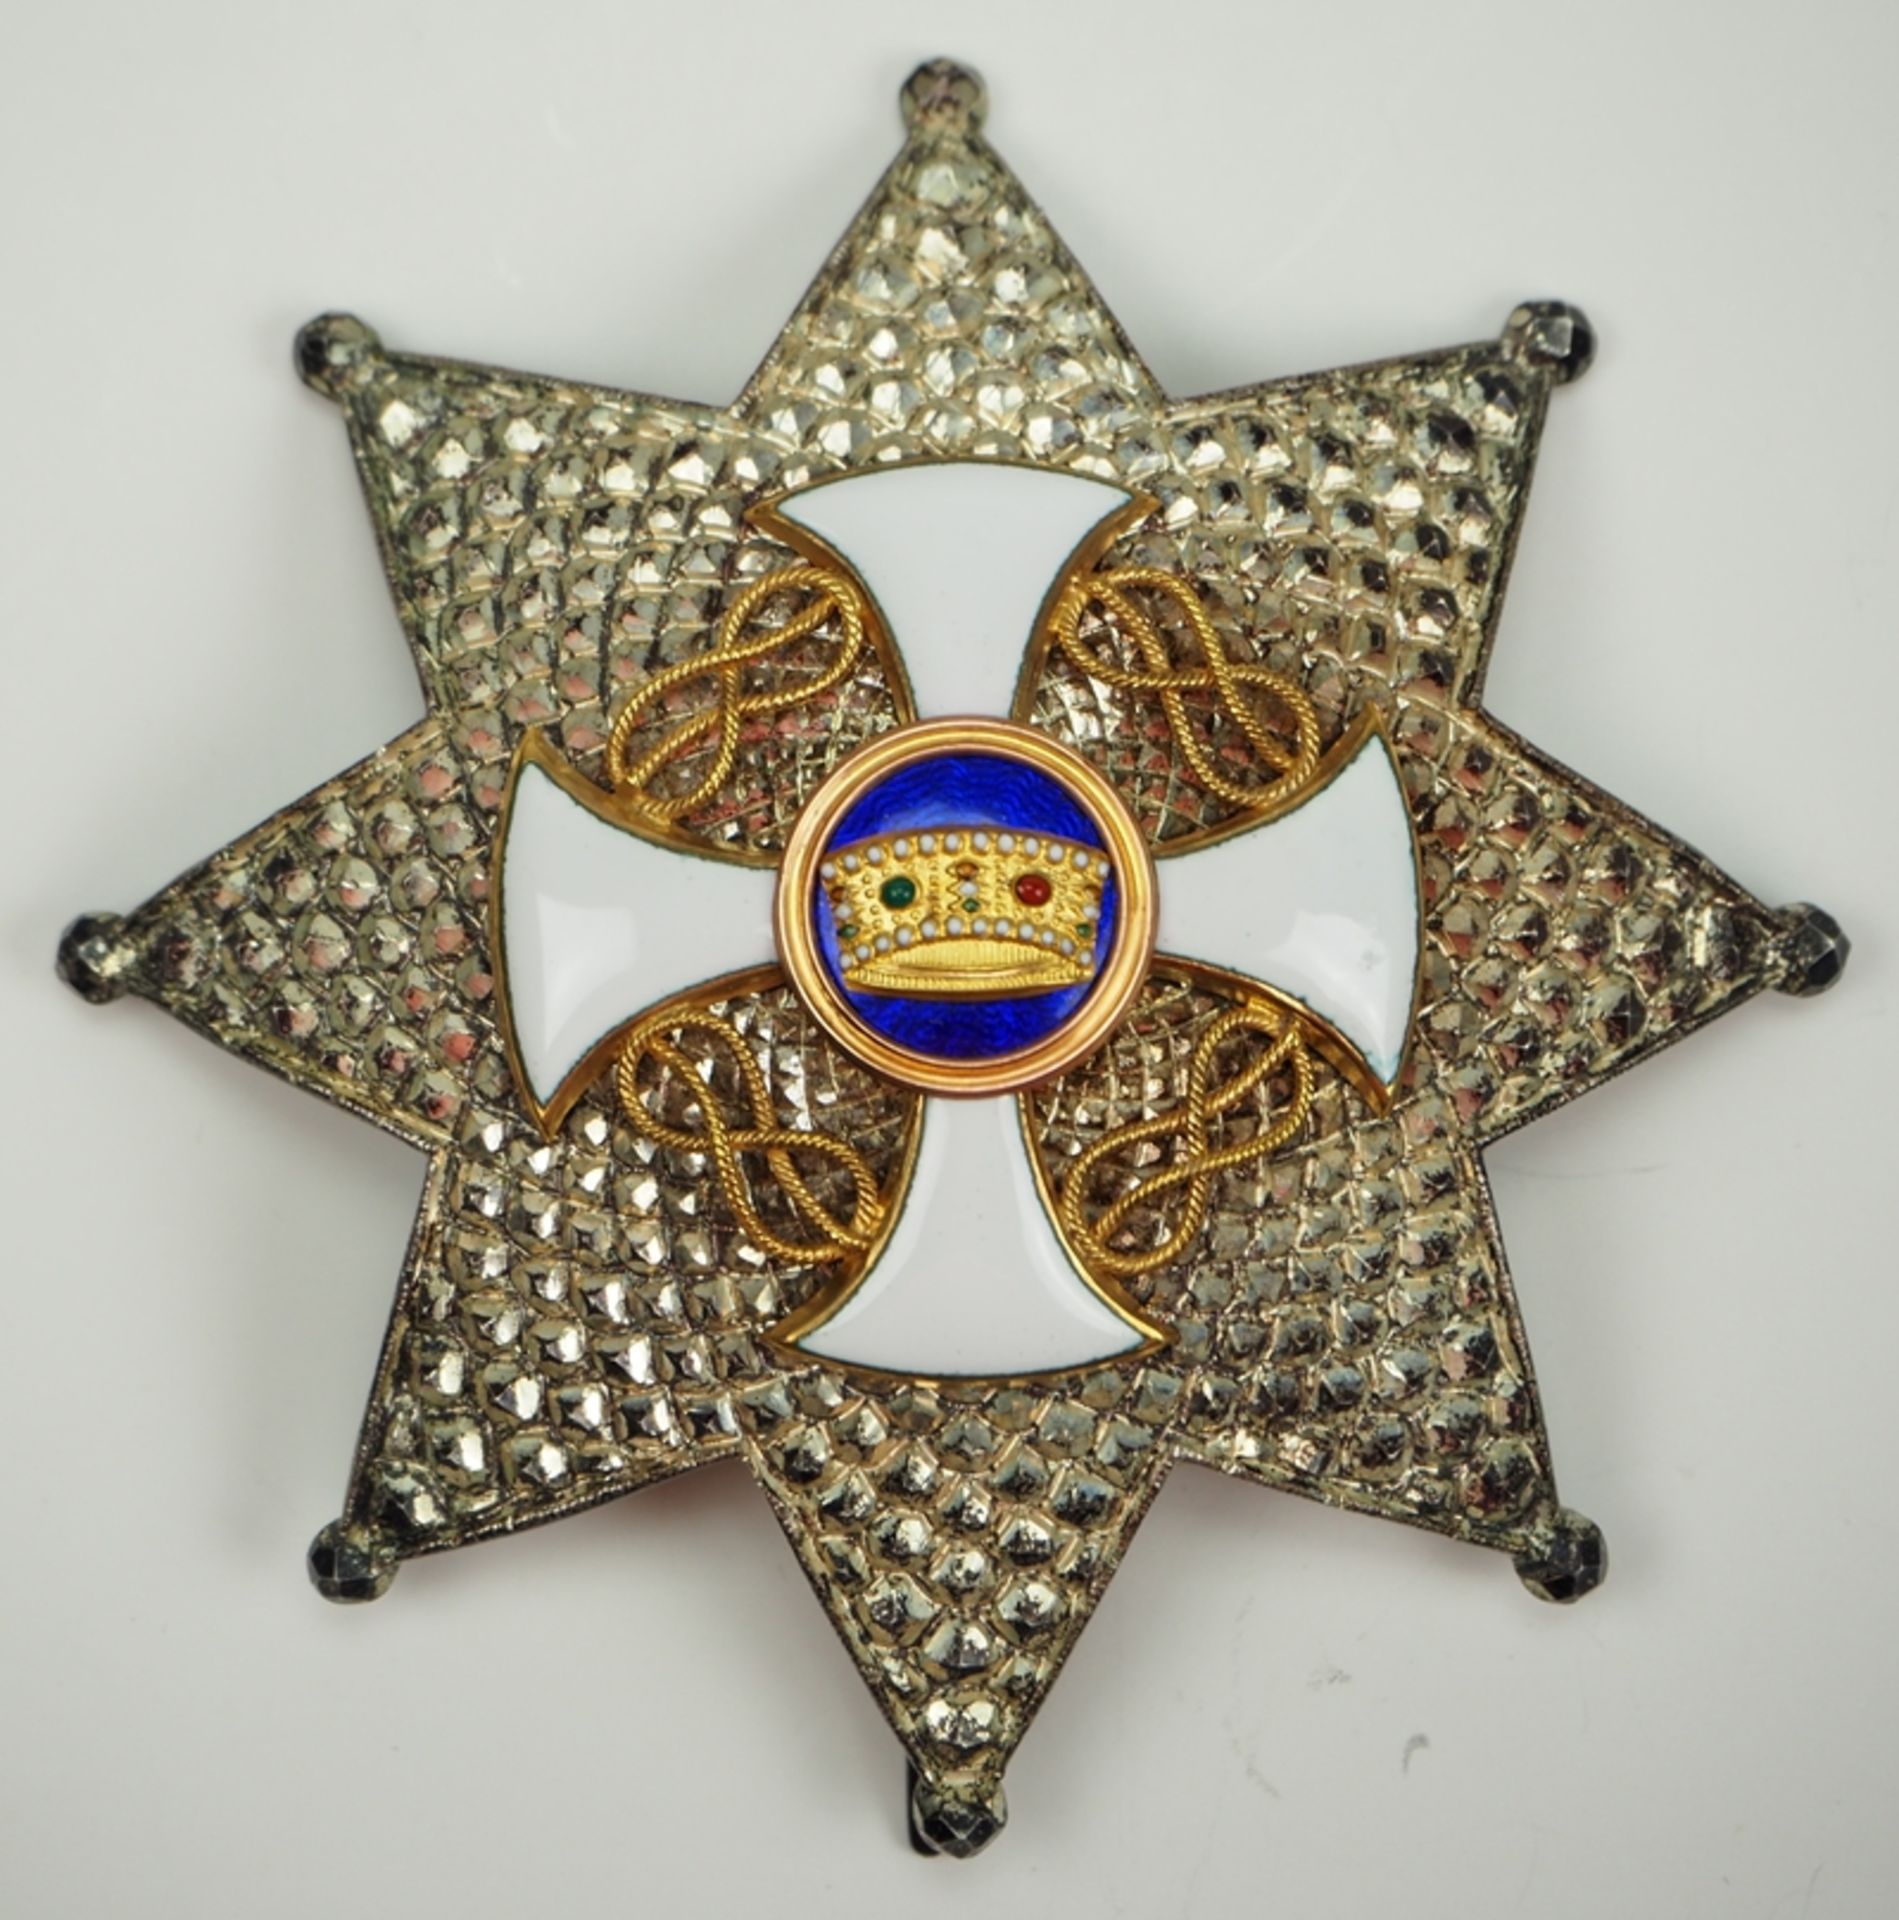 Italien: Orden der Krone von Italien, Komtur Stern.